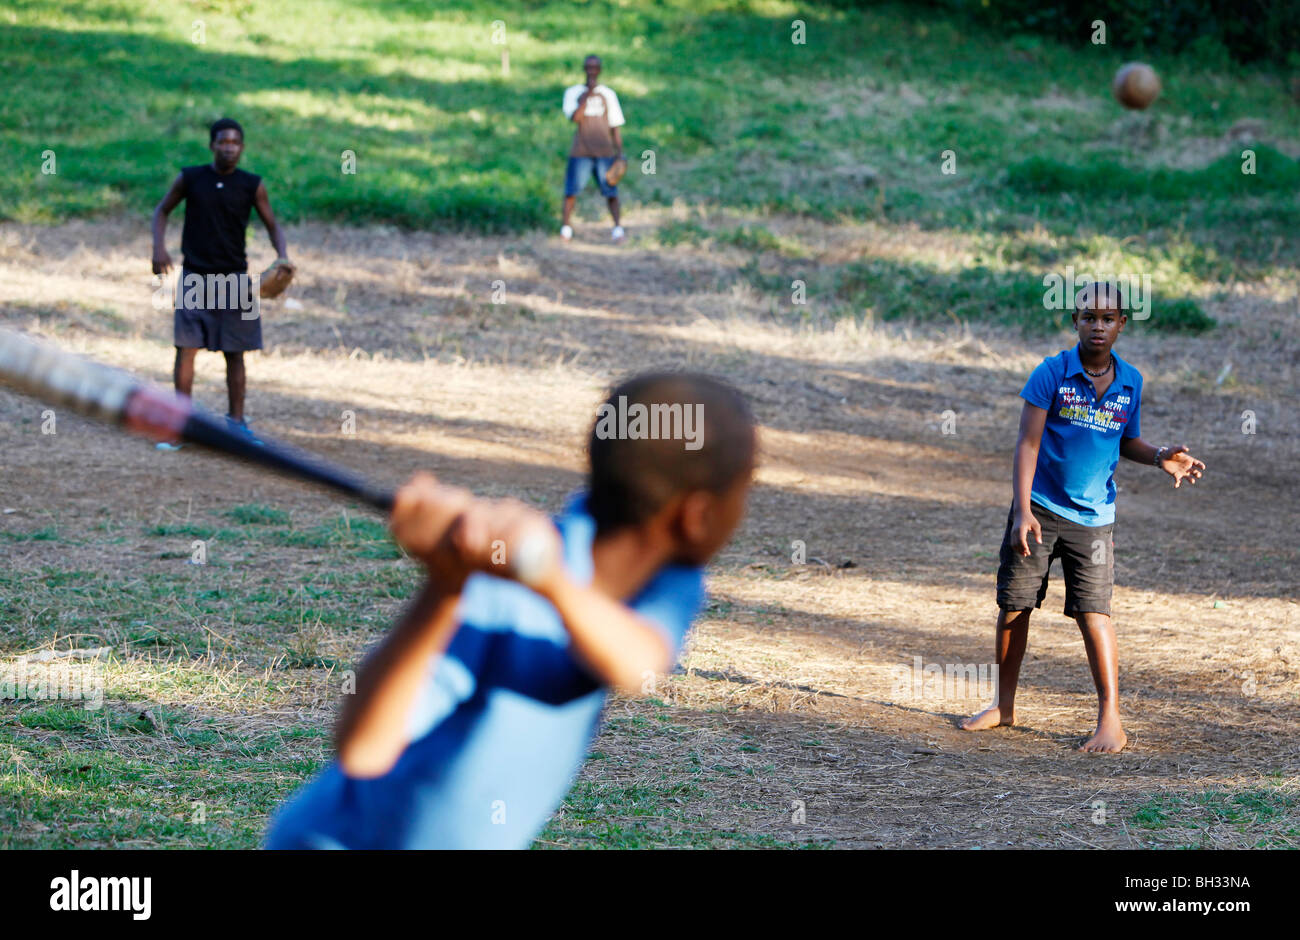 Boys, informal baseball game, Dominican Republic Stock Photo